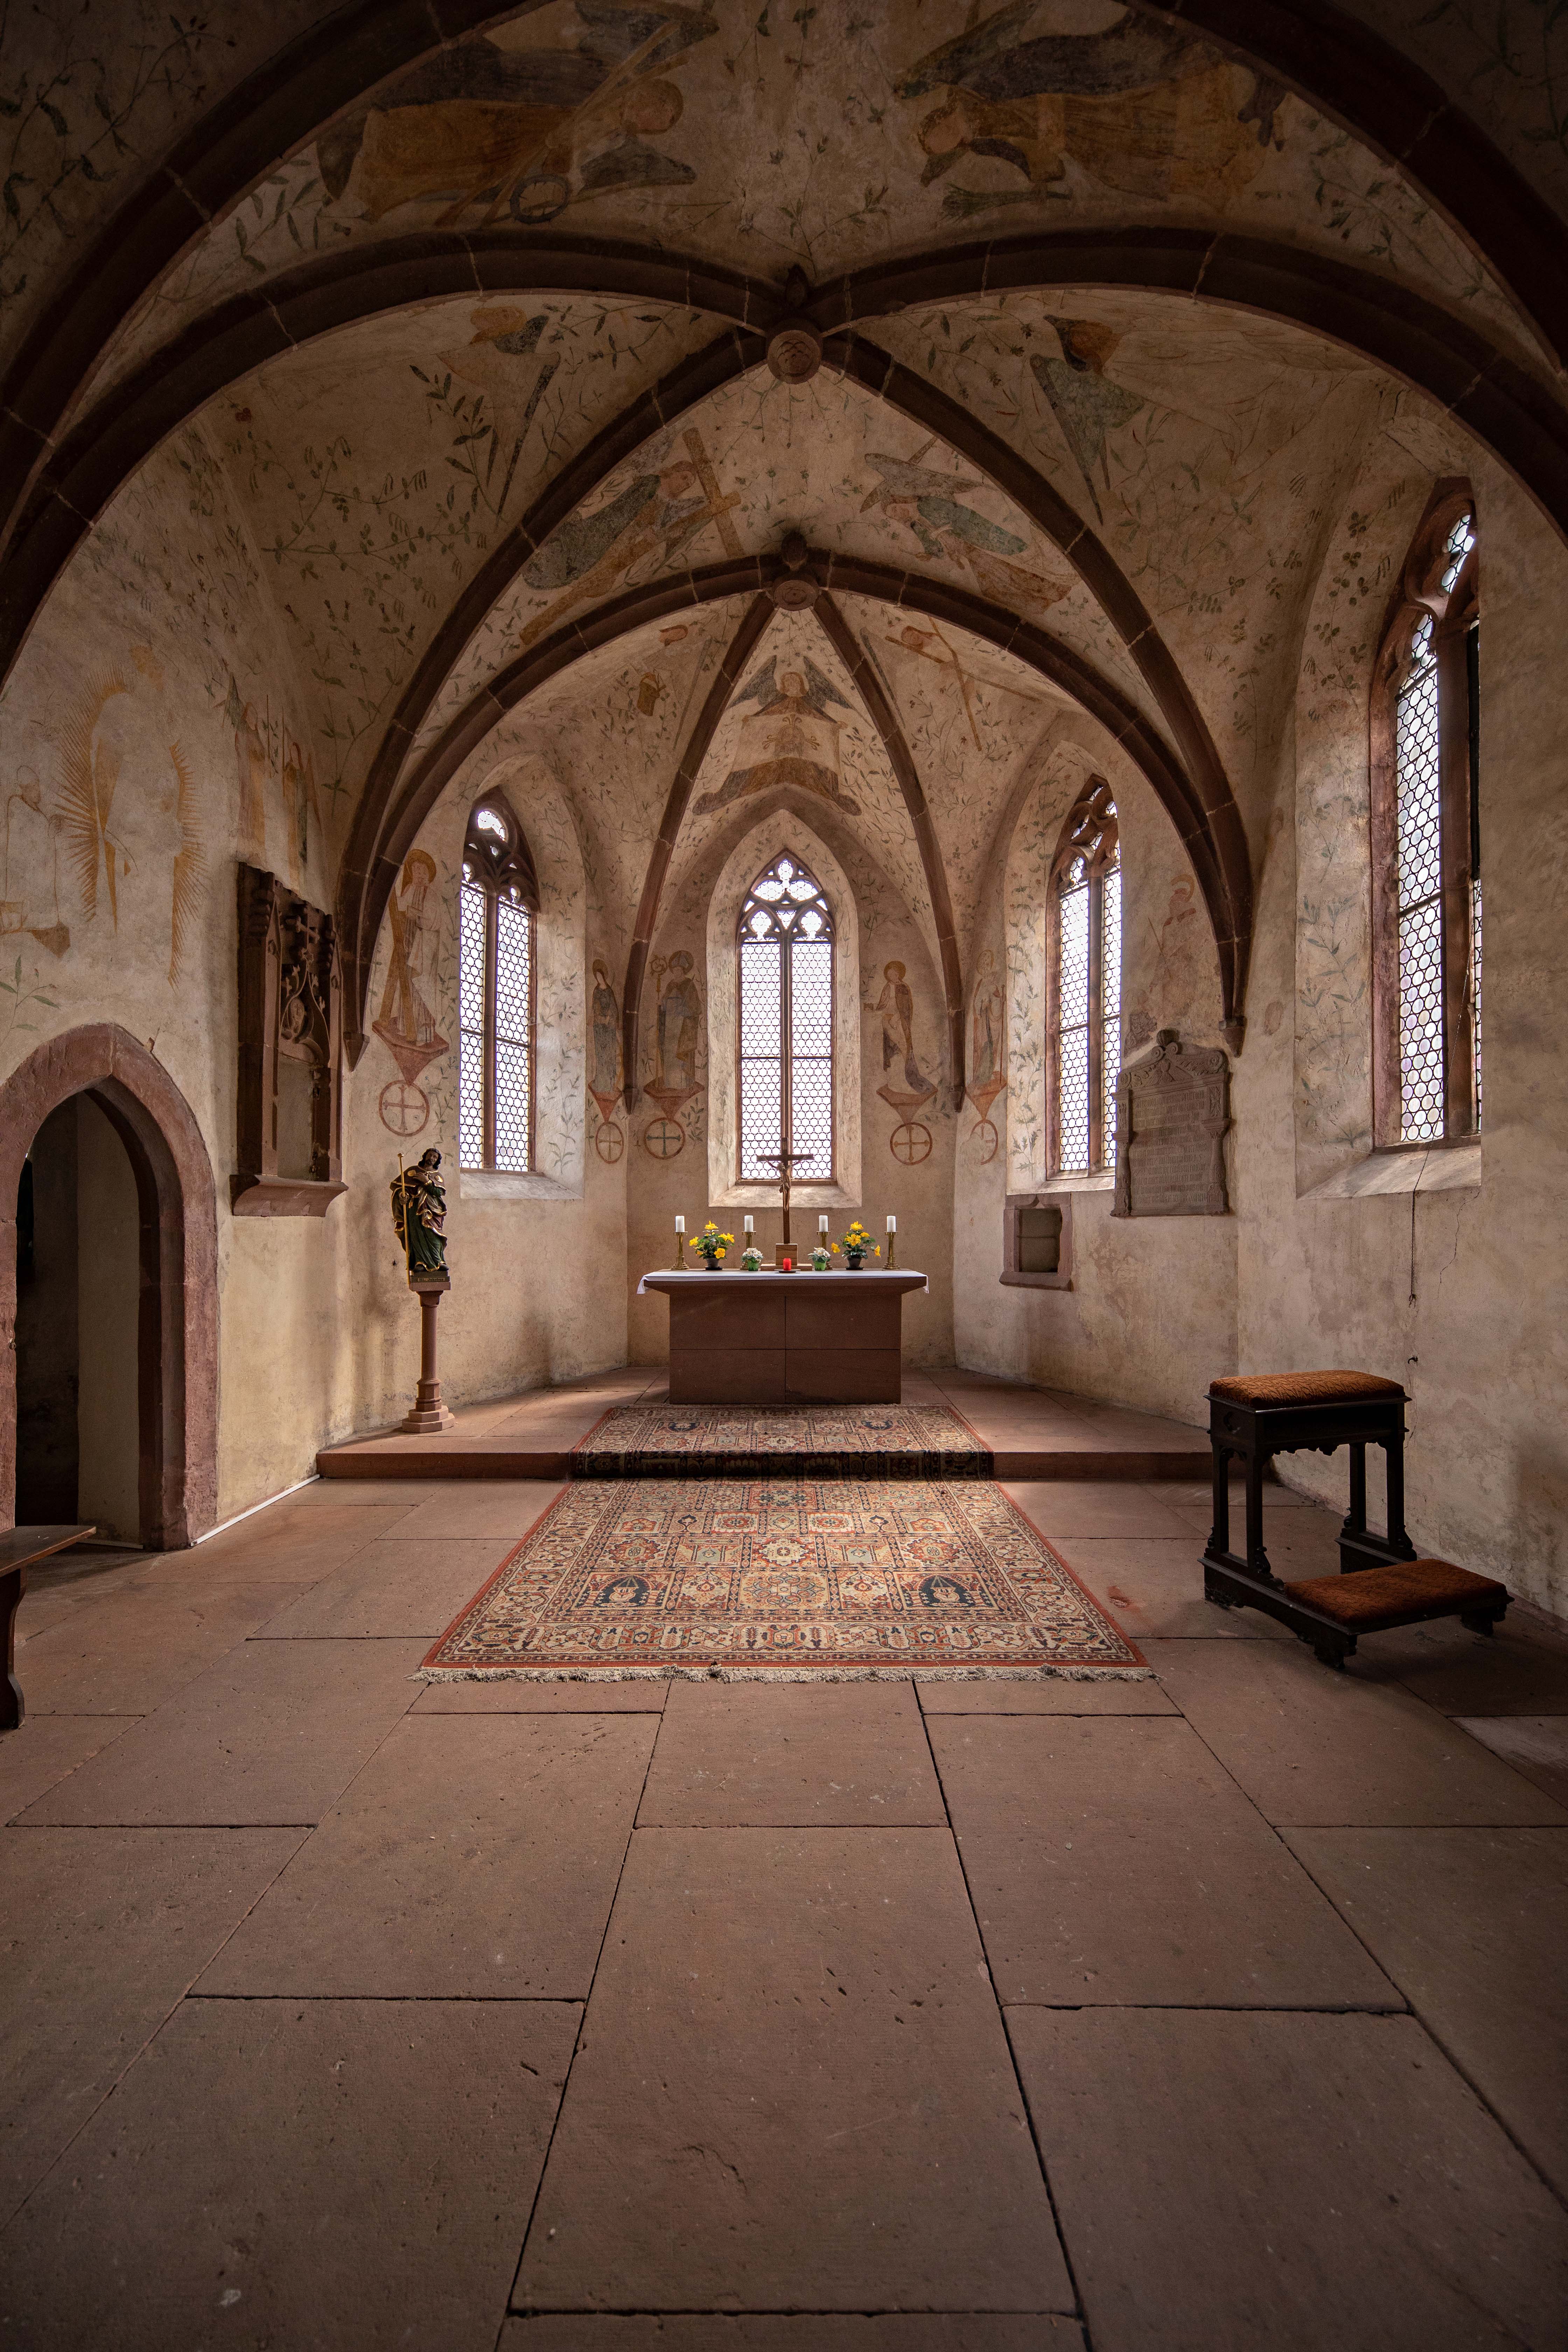 Innenraum der Alten Kapelle in Landstuhl. Blick in Richtung des Chors. Die Decke schmücken Kreuzrippengewölbe und Malereien